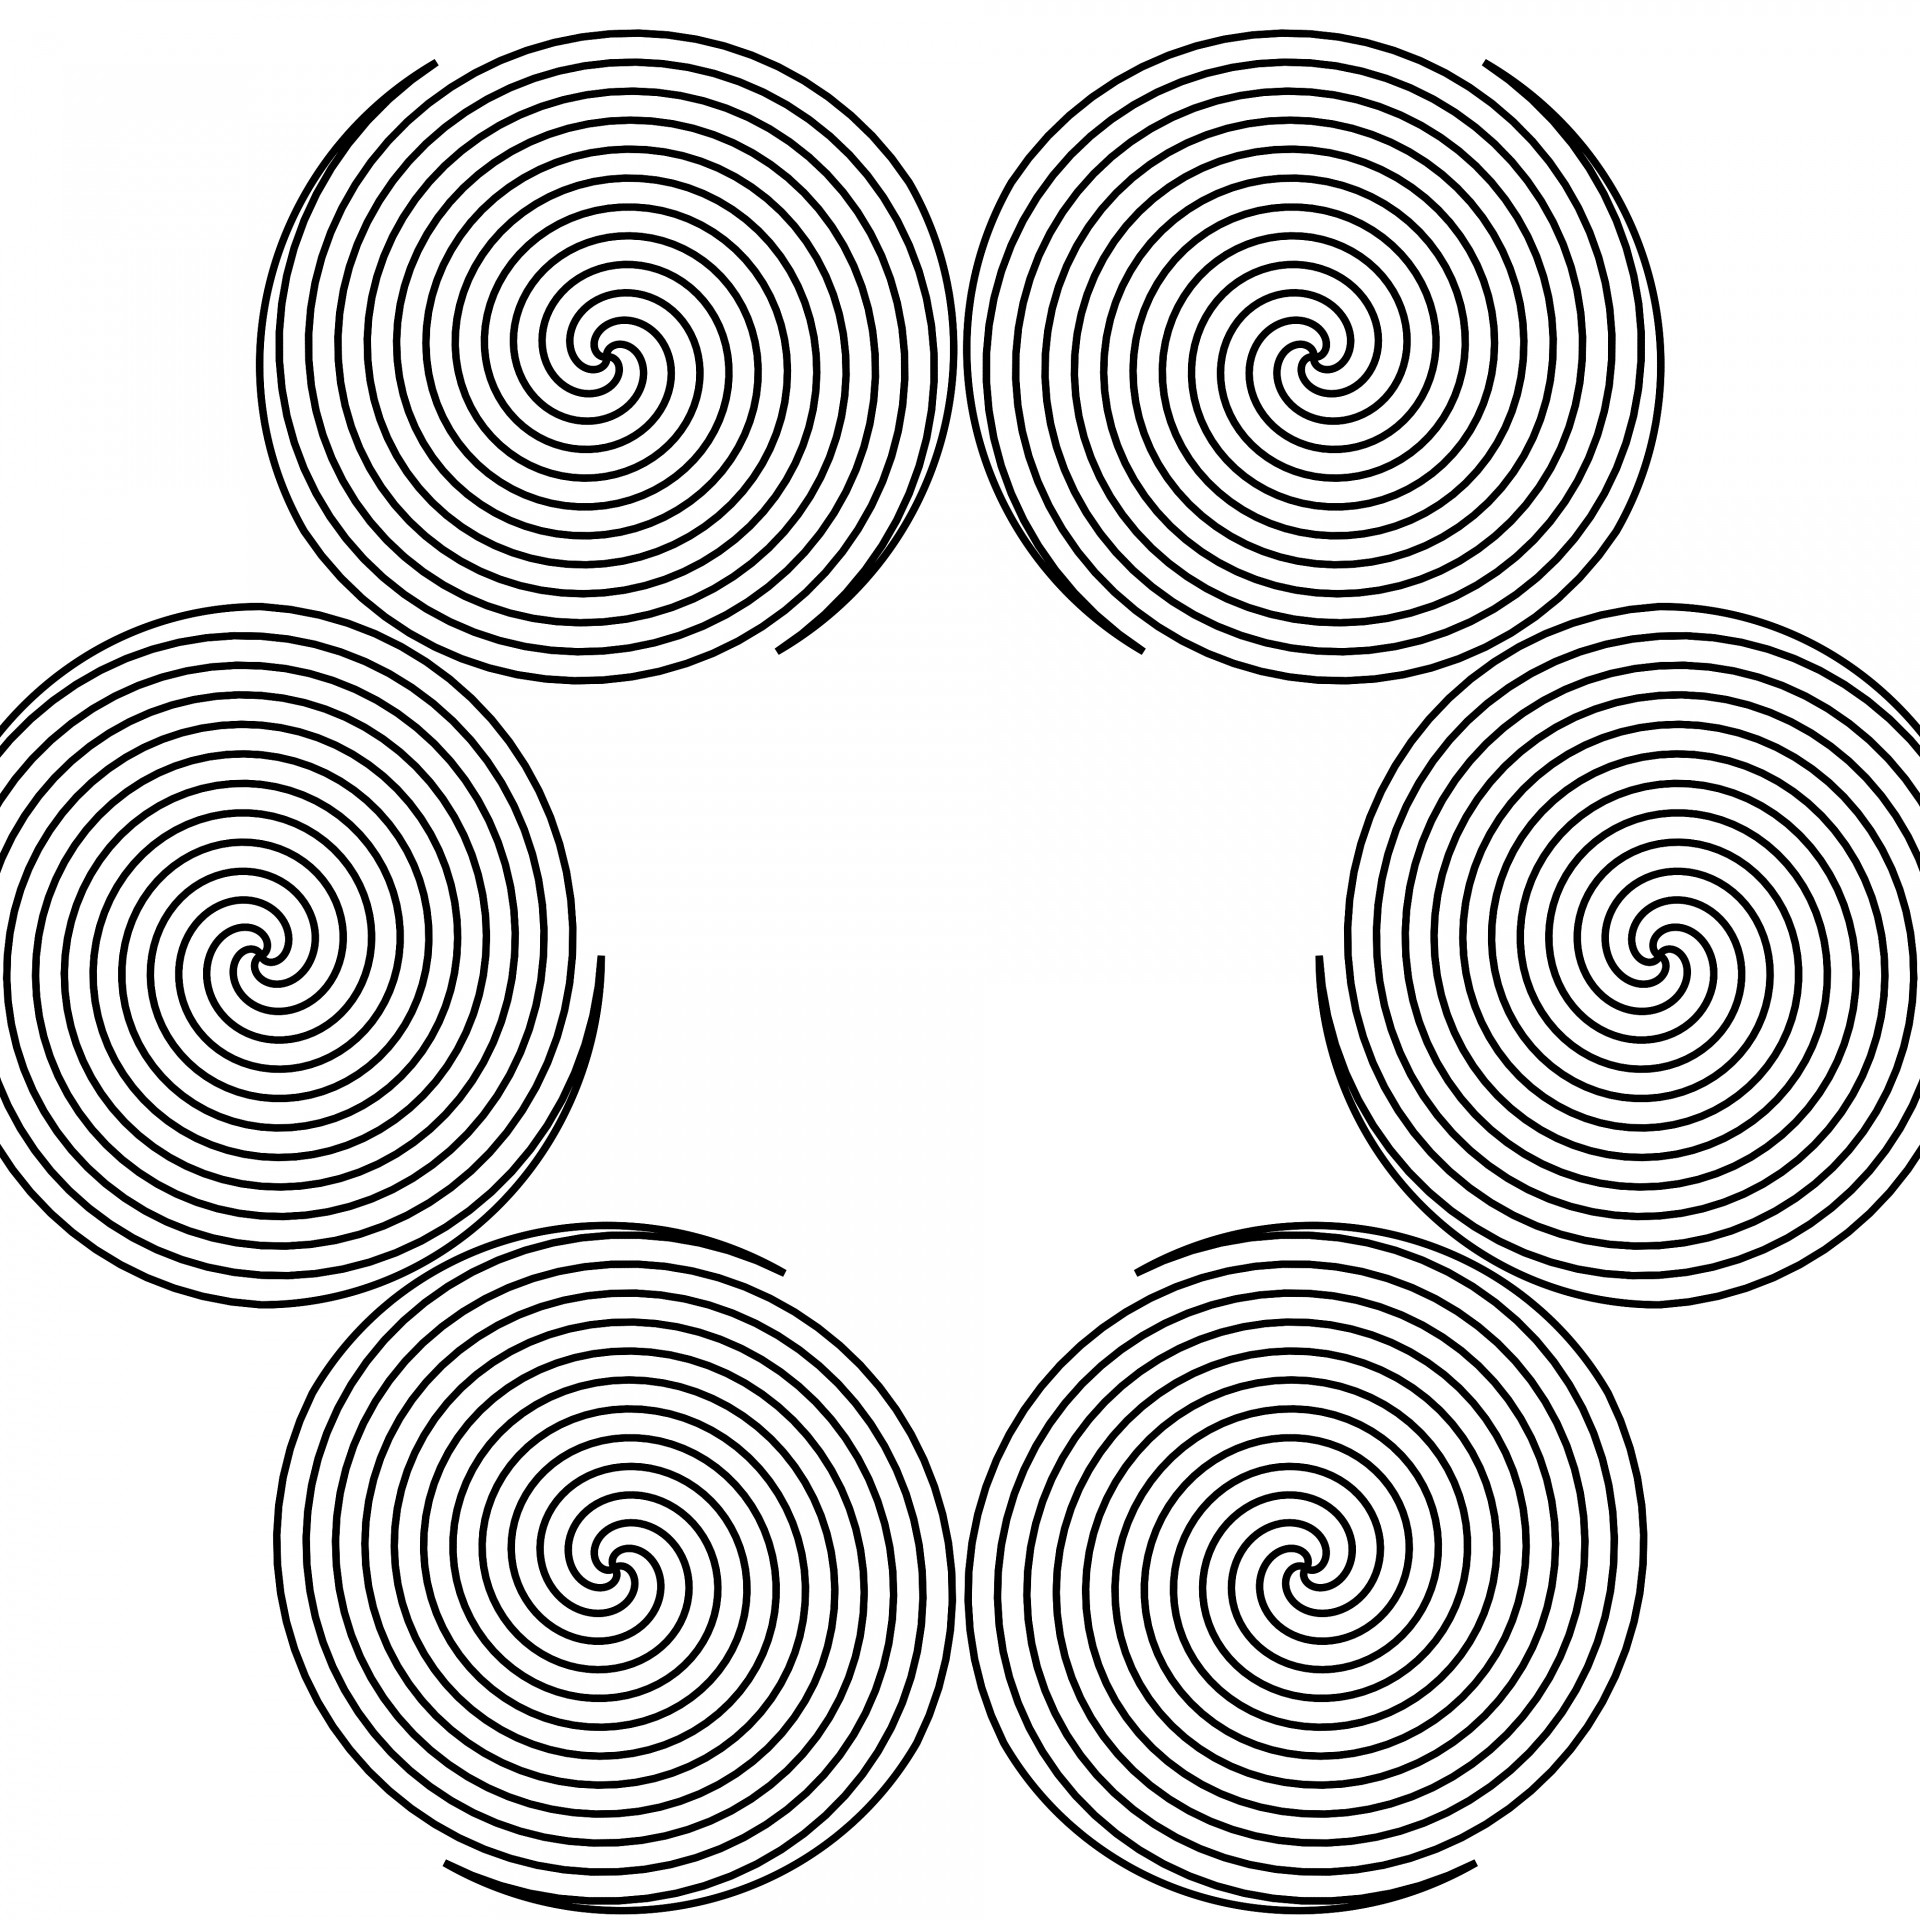 Линия через круги. Спираль для рисования. Спиральная раскраска. Орнамент спираль. Спираль для раскрашивания.